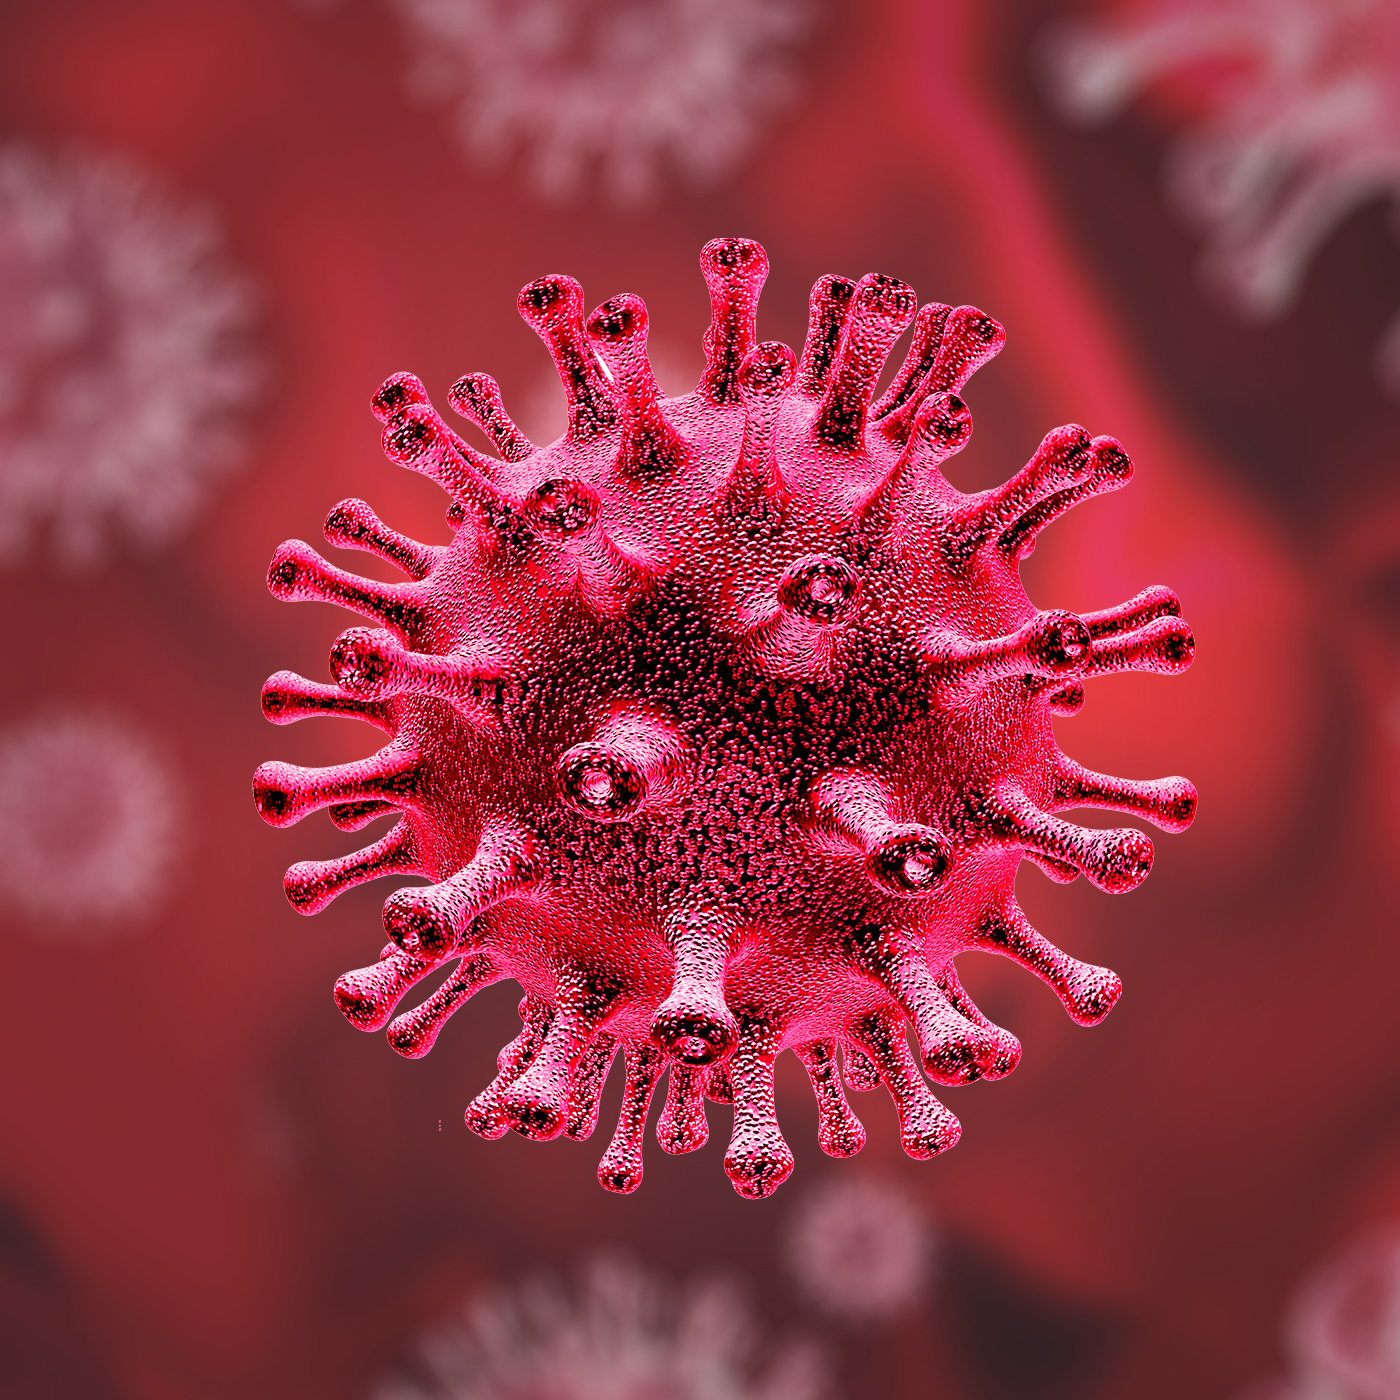 Les coronavirus peuvent être efficacement retenus par les filtres H14